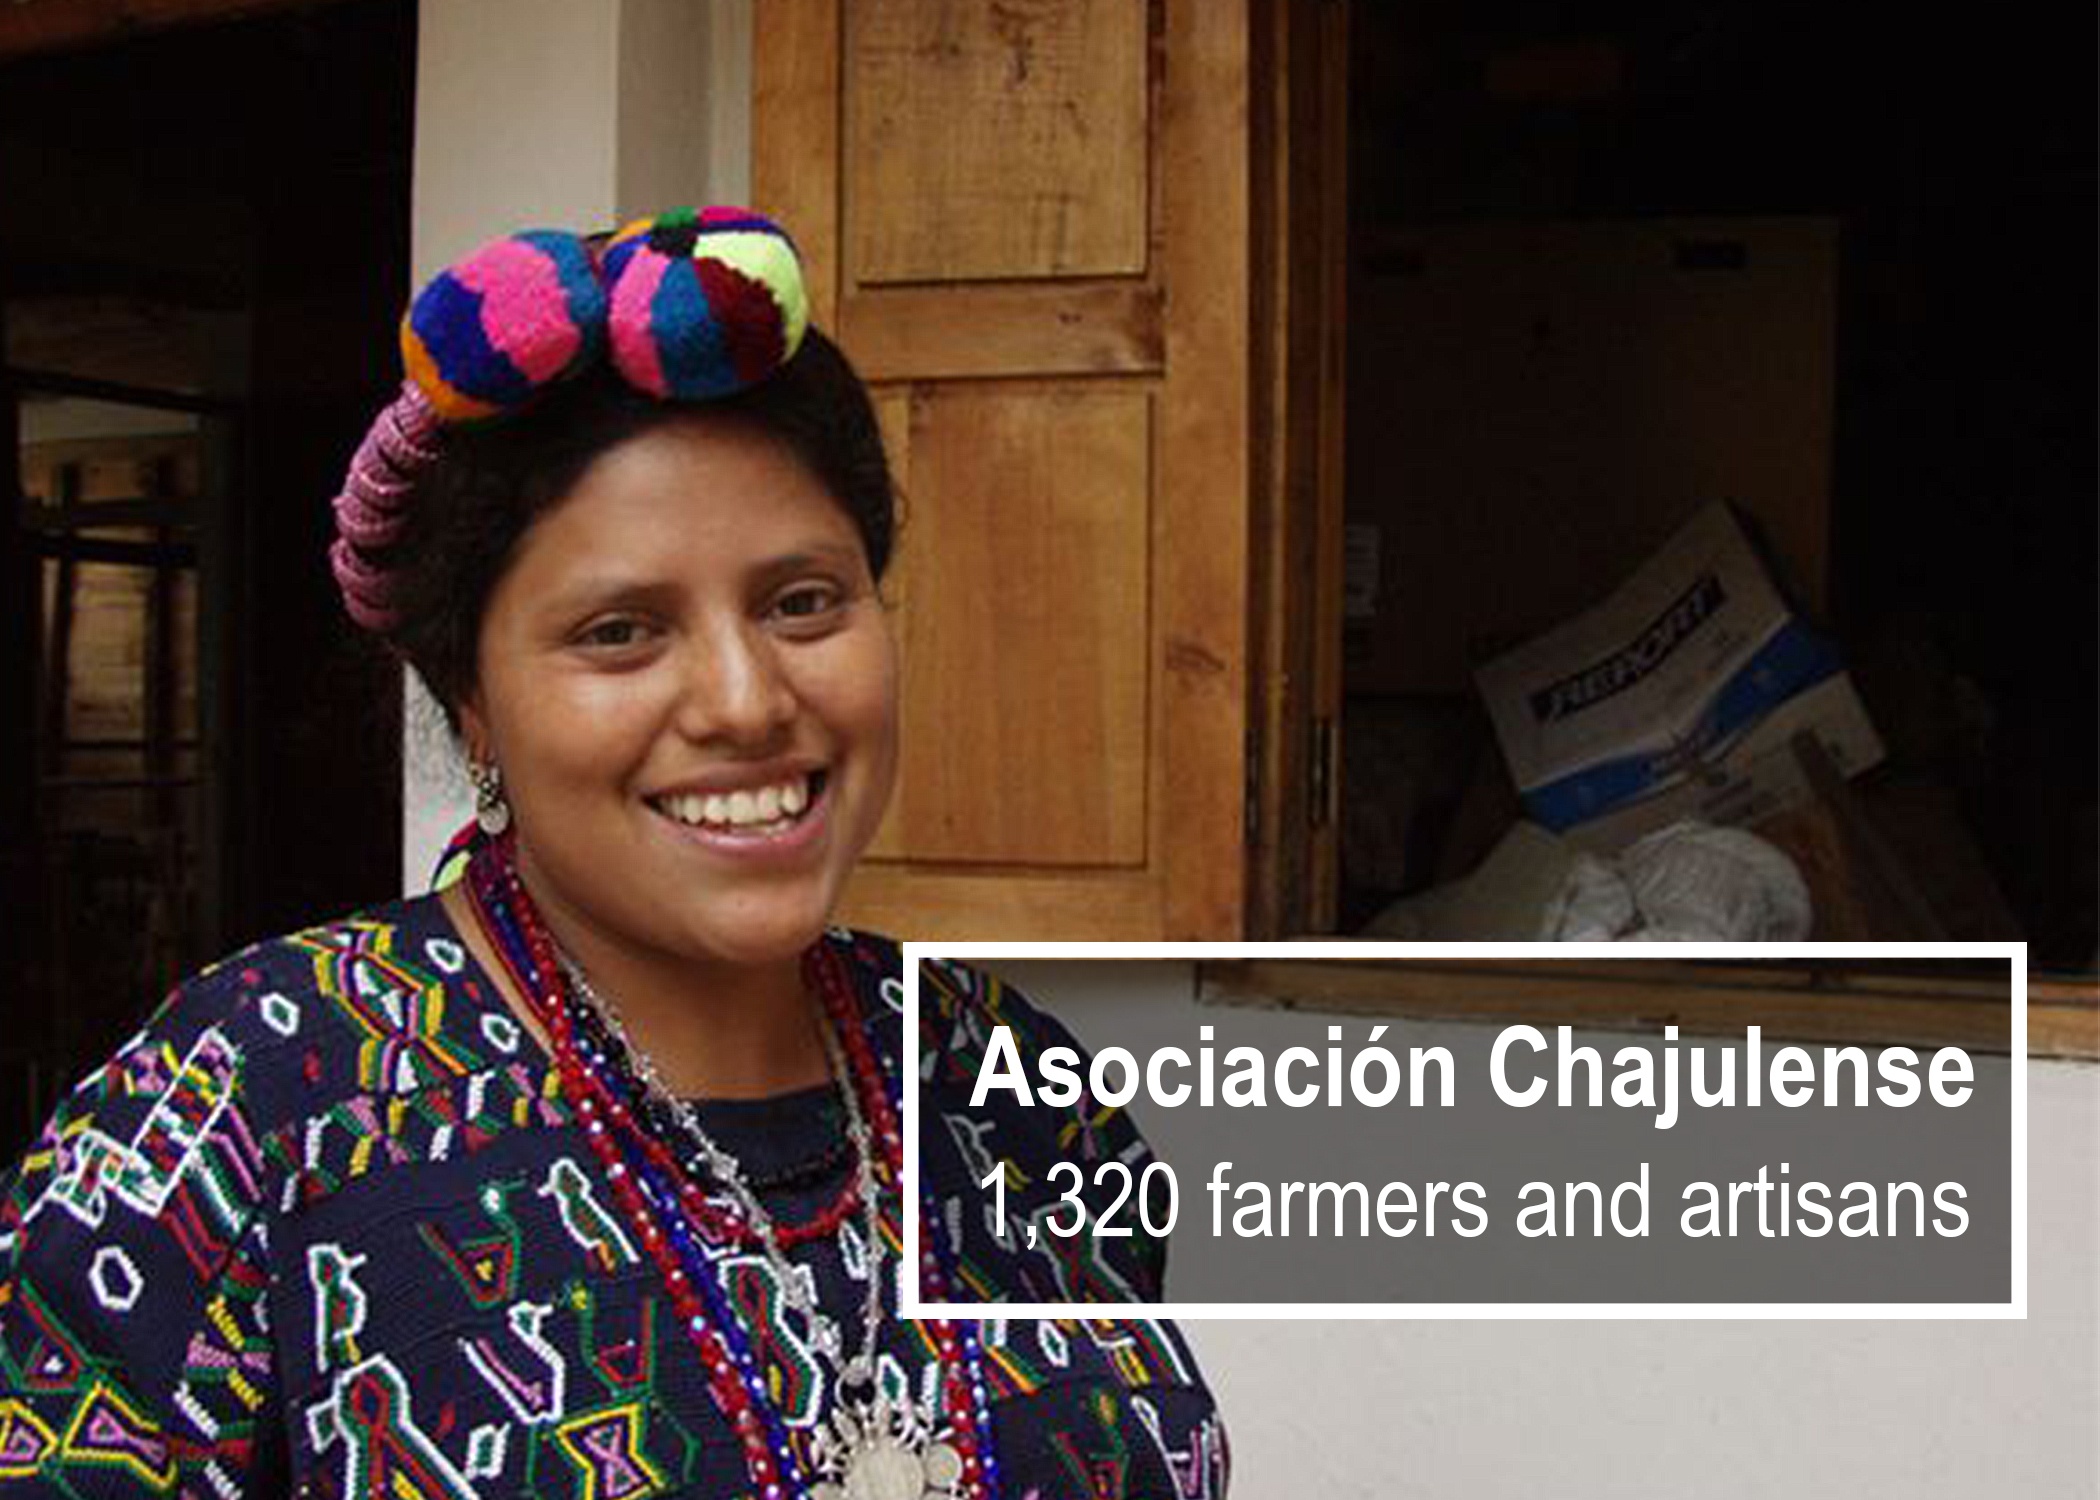 Asociación Chajulense, Guatemala